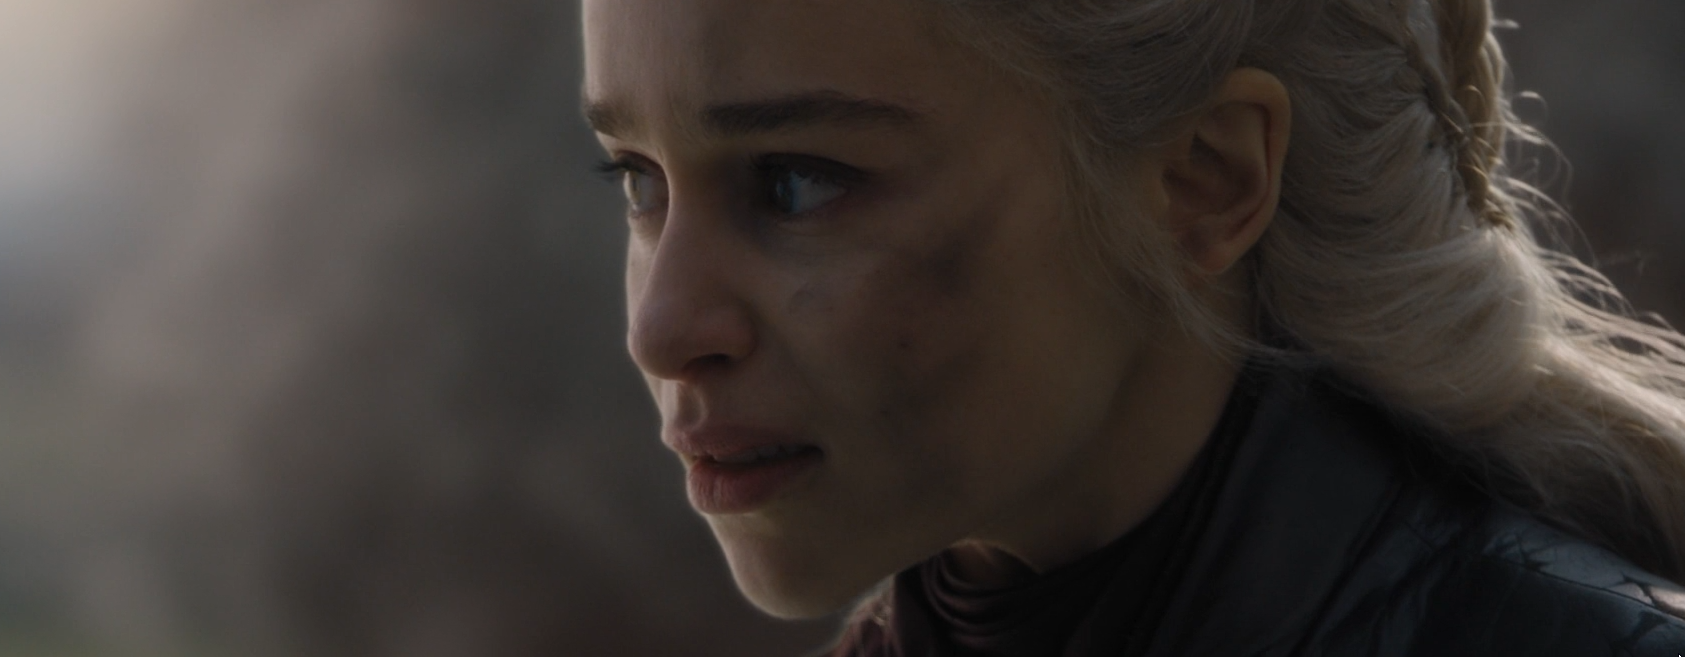 Líder, louca e fragilizada – quem vai parar Daenerys?